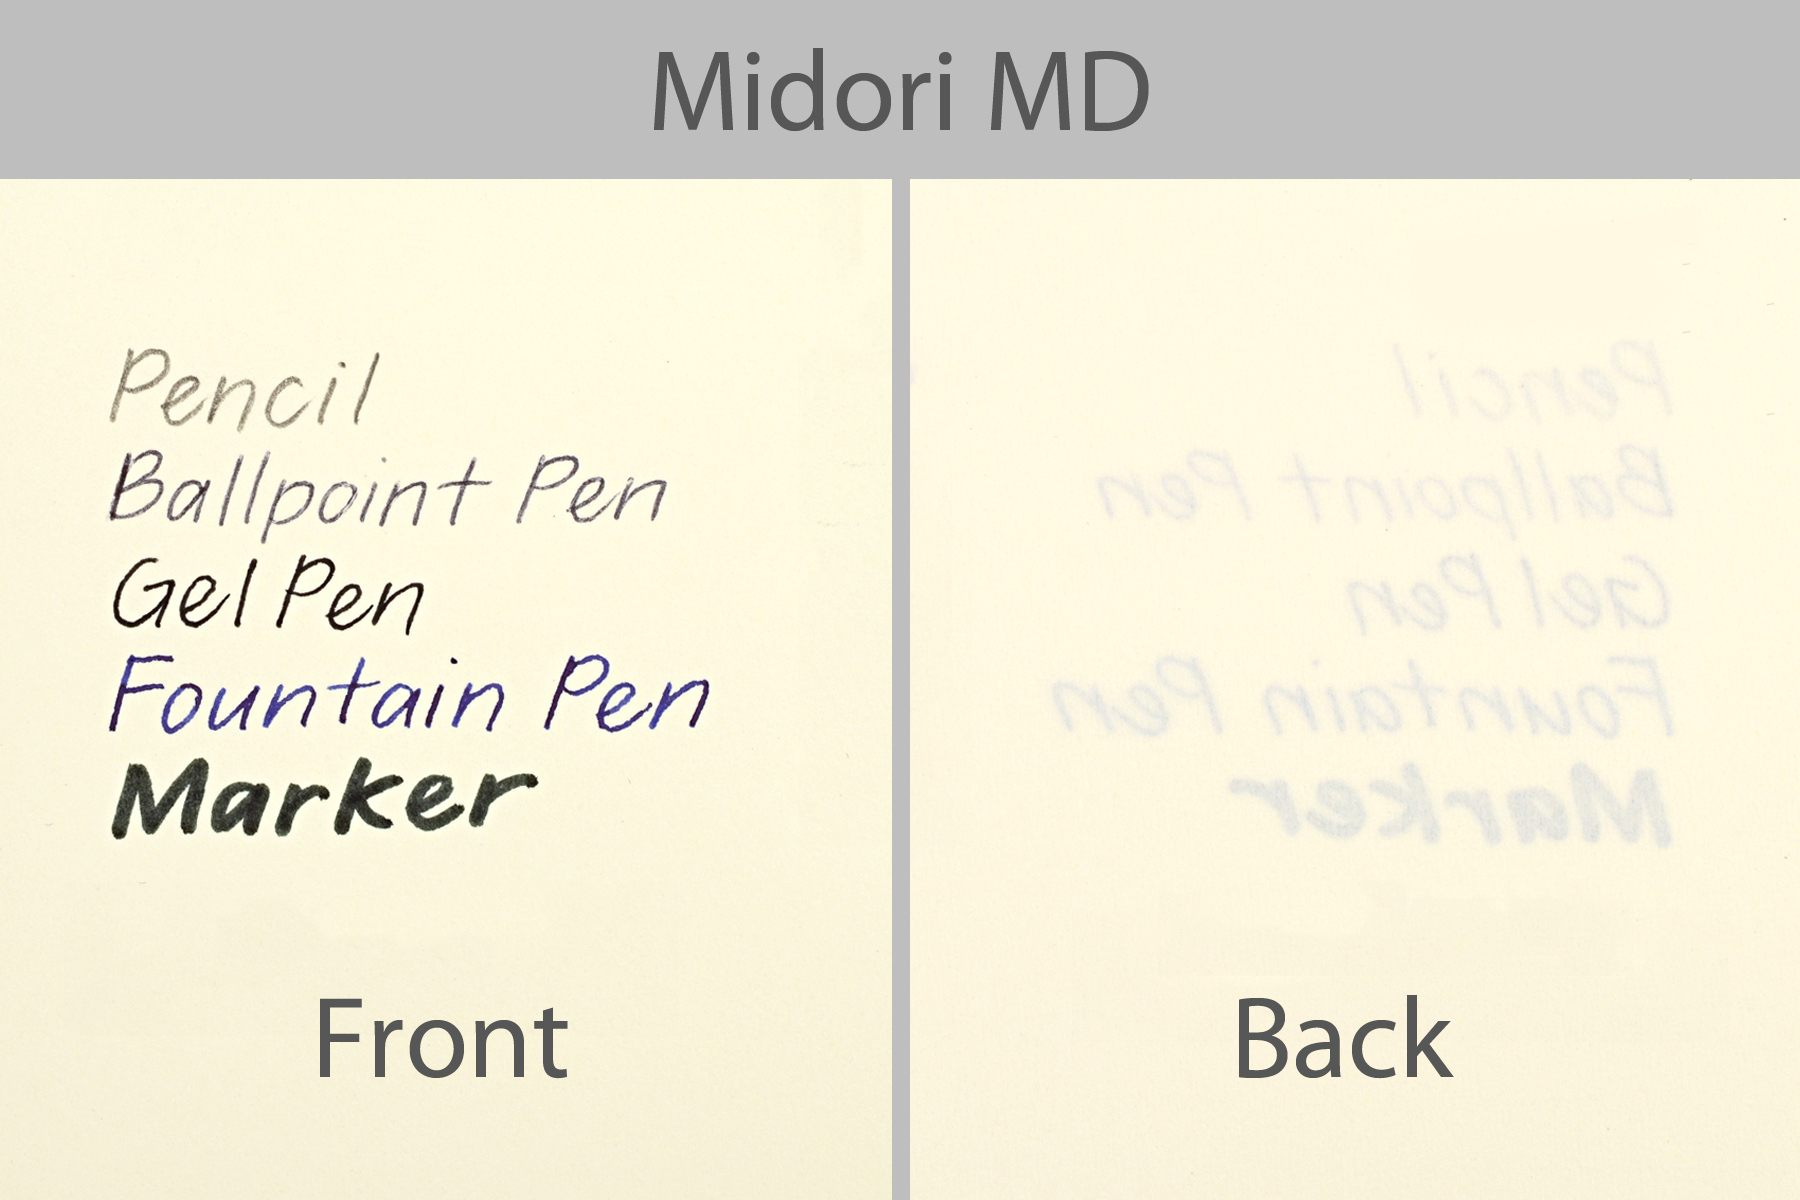 Midori MD writing sample.